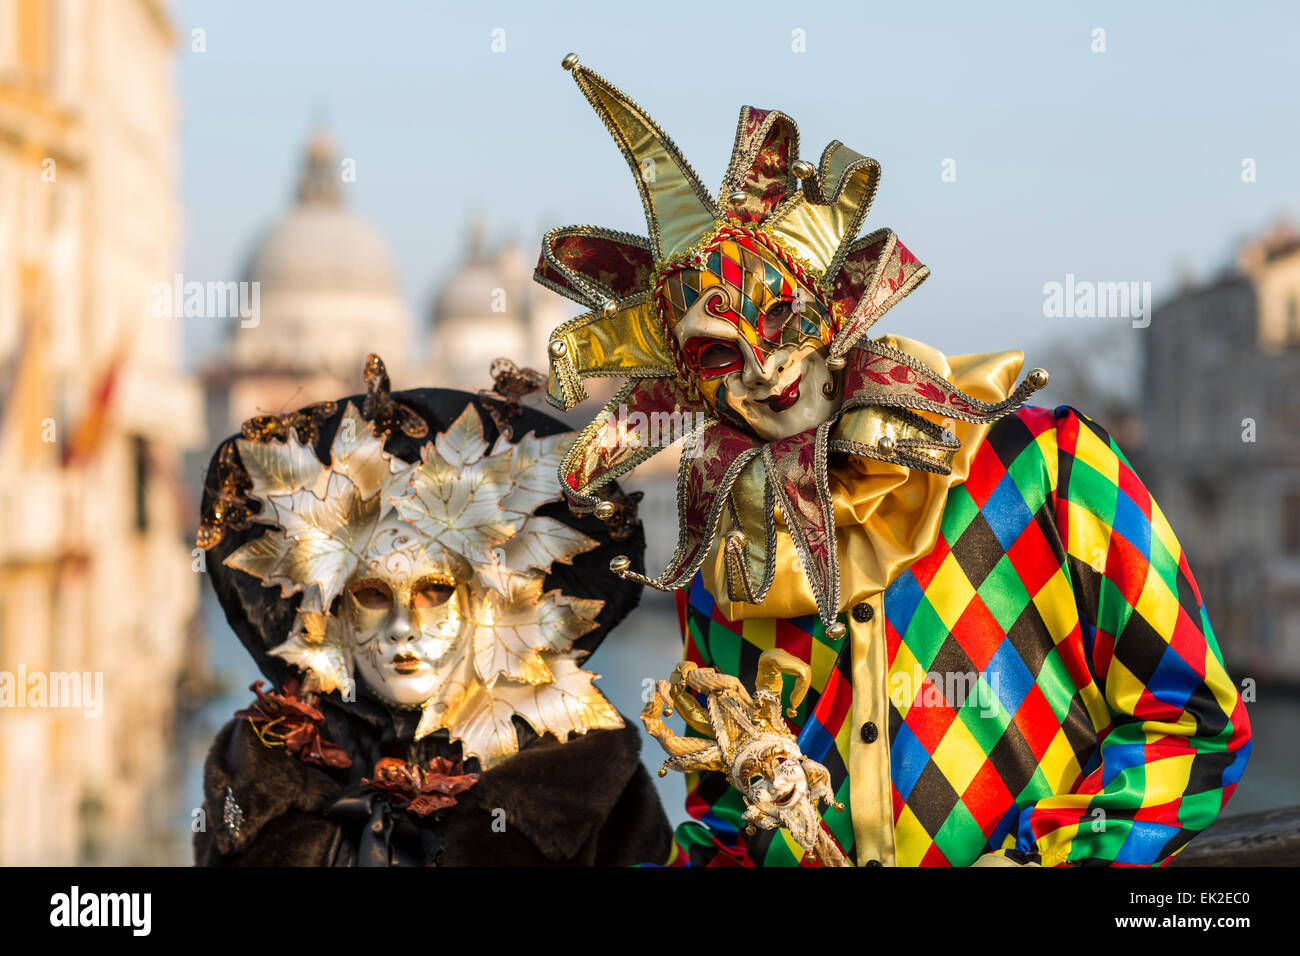 El hombre y la mujer en el carnaval de disfraces y máscaras, Venecia, Italia Foto de stock